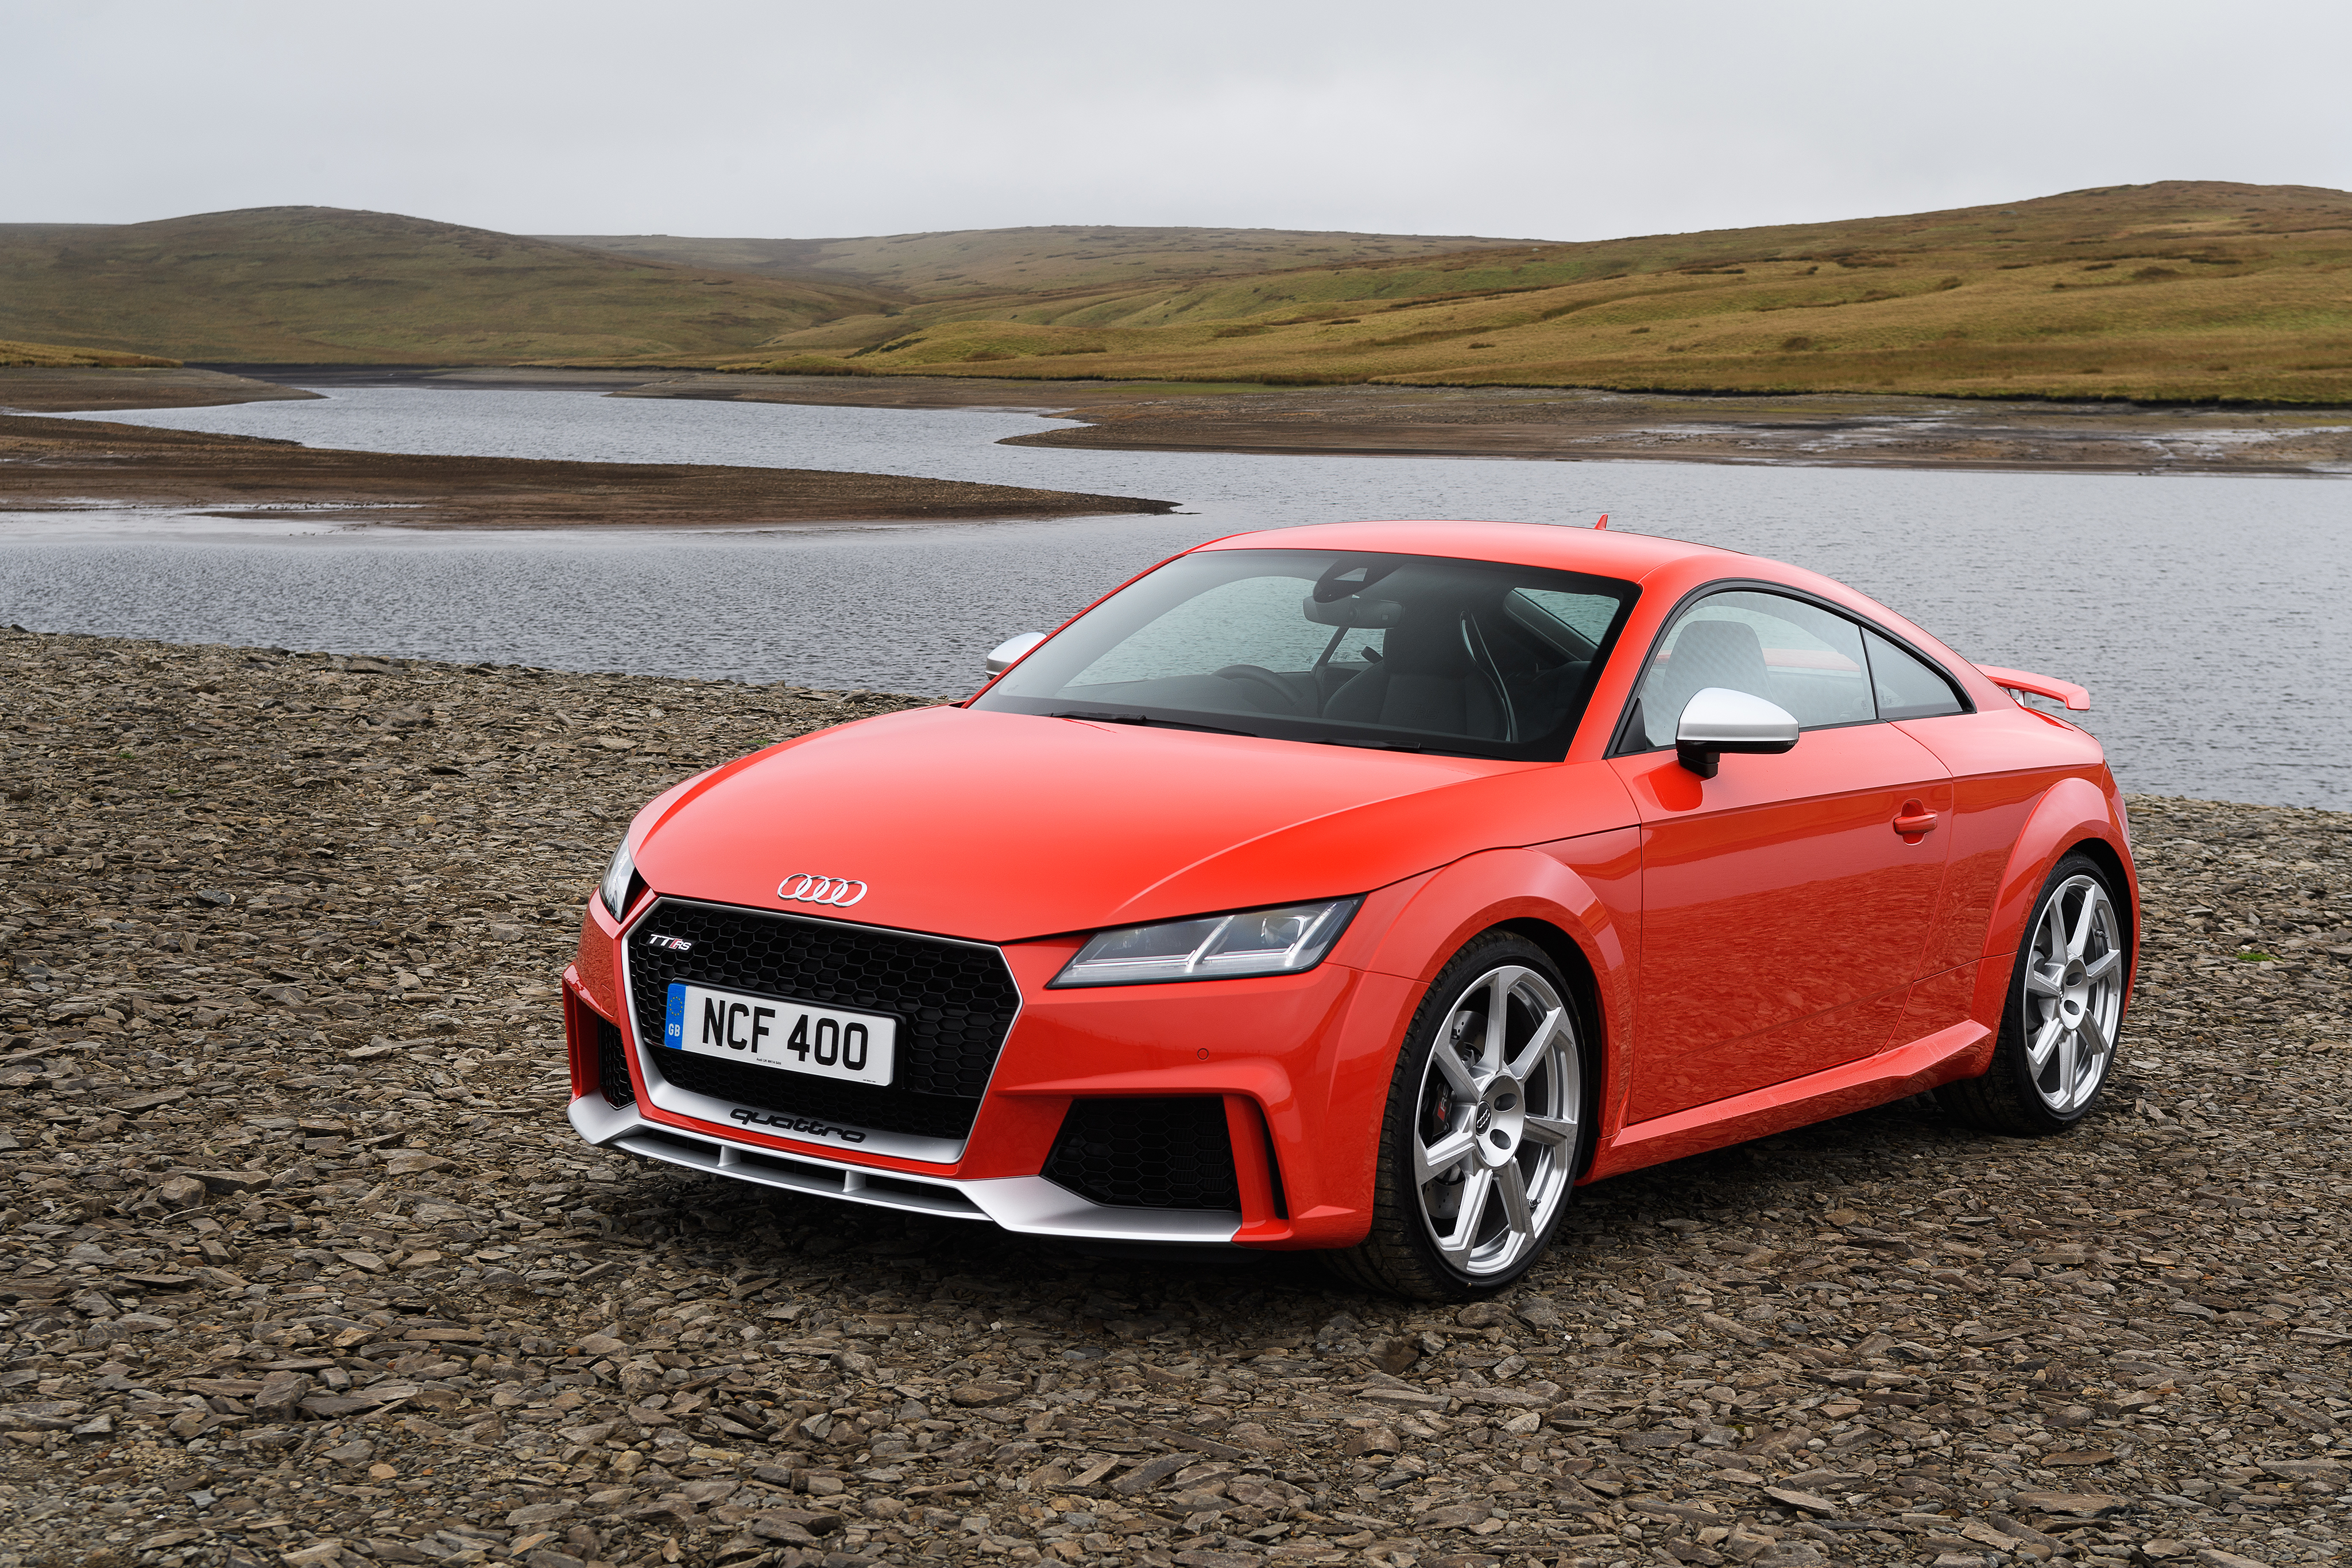 Download mobile wallpaper Audi, Car, Audi Tt, Vehicles for free.